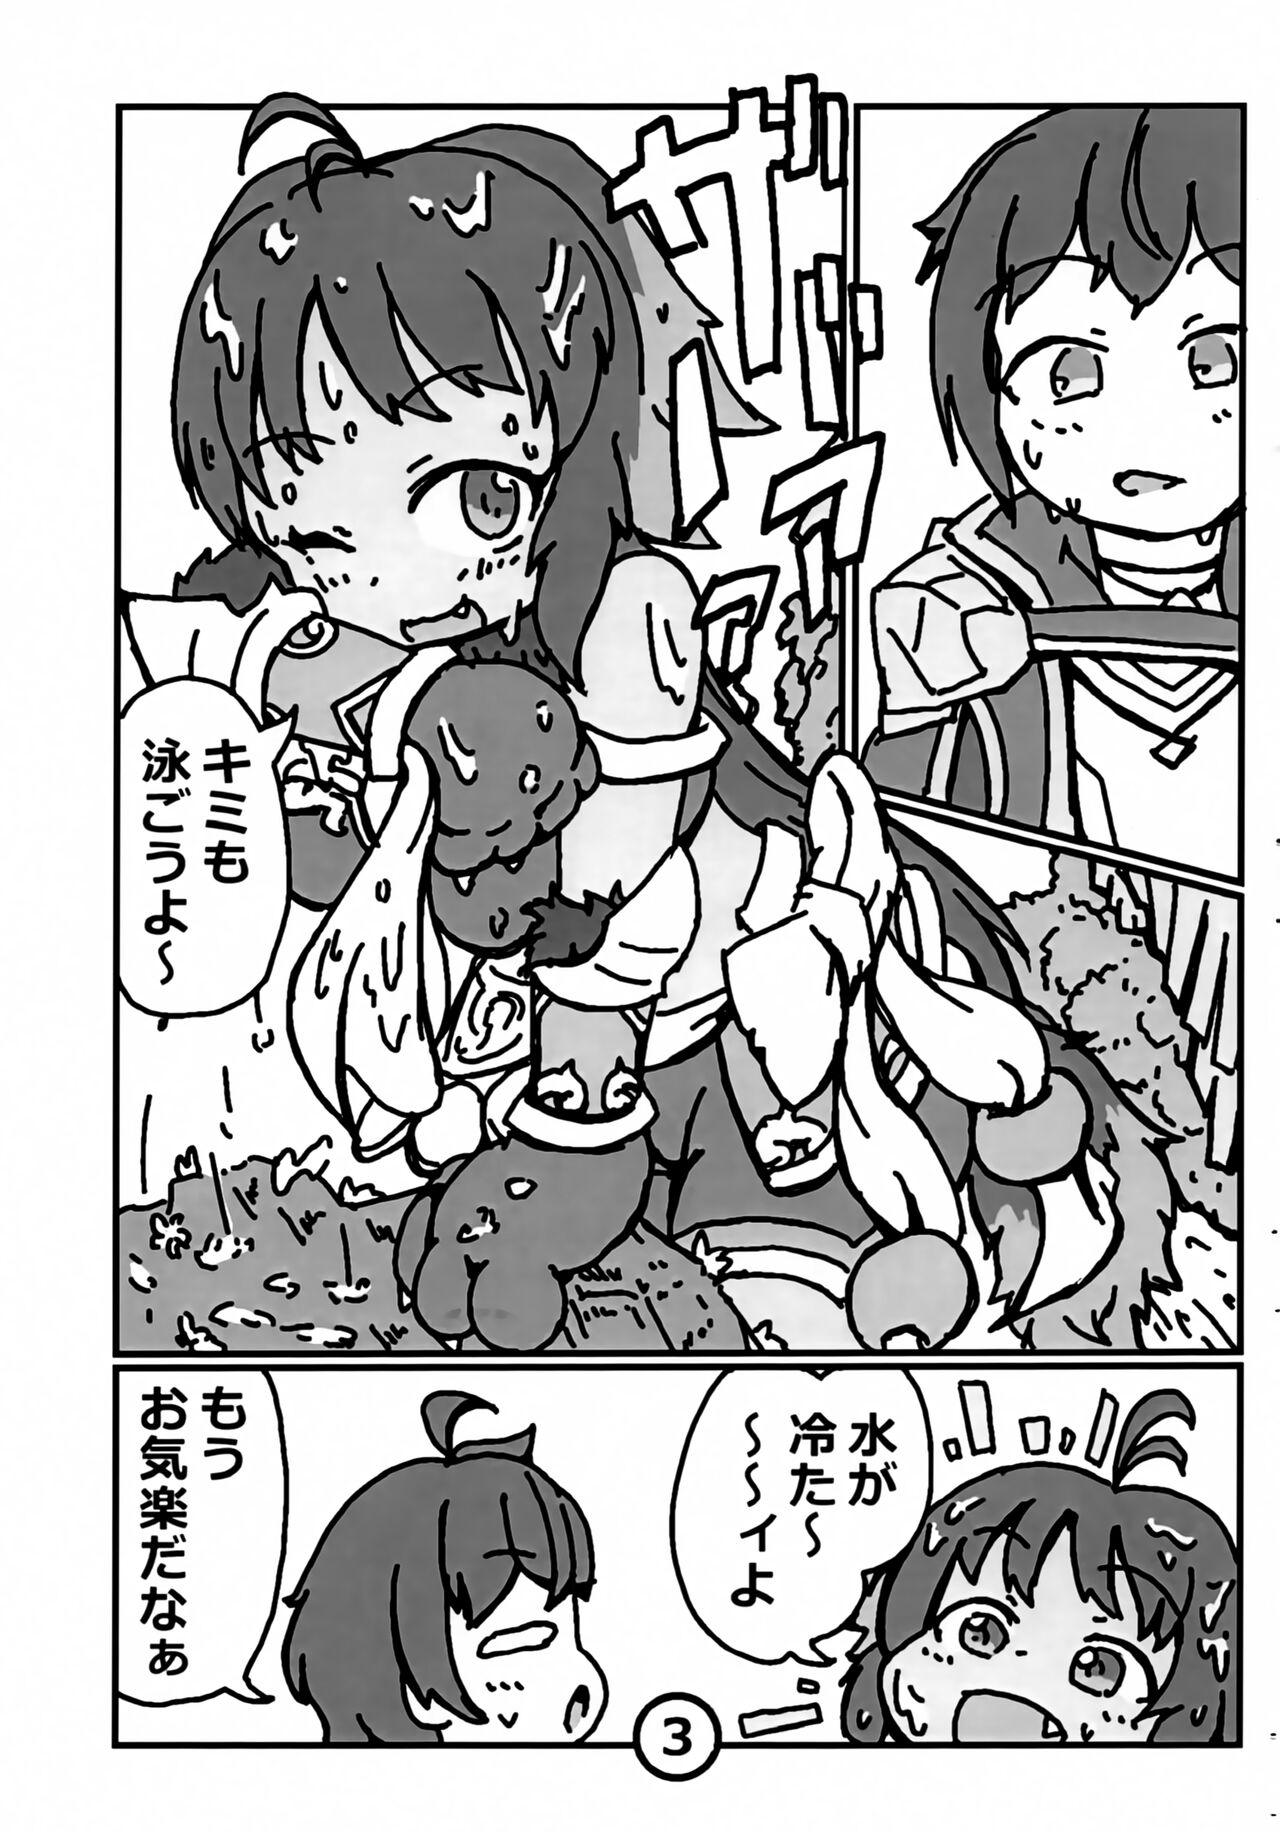 Dom Natsukaze no Ka - Princess connect Hunks - Page 4